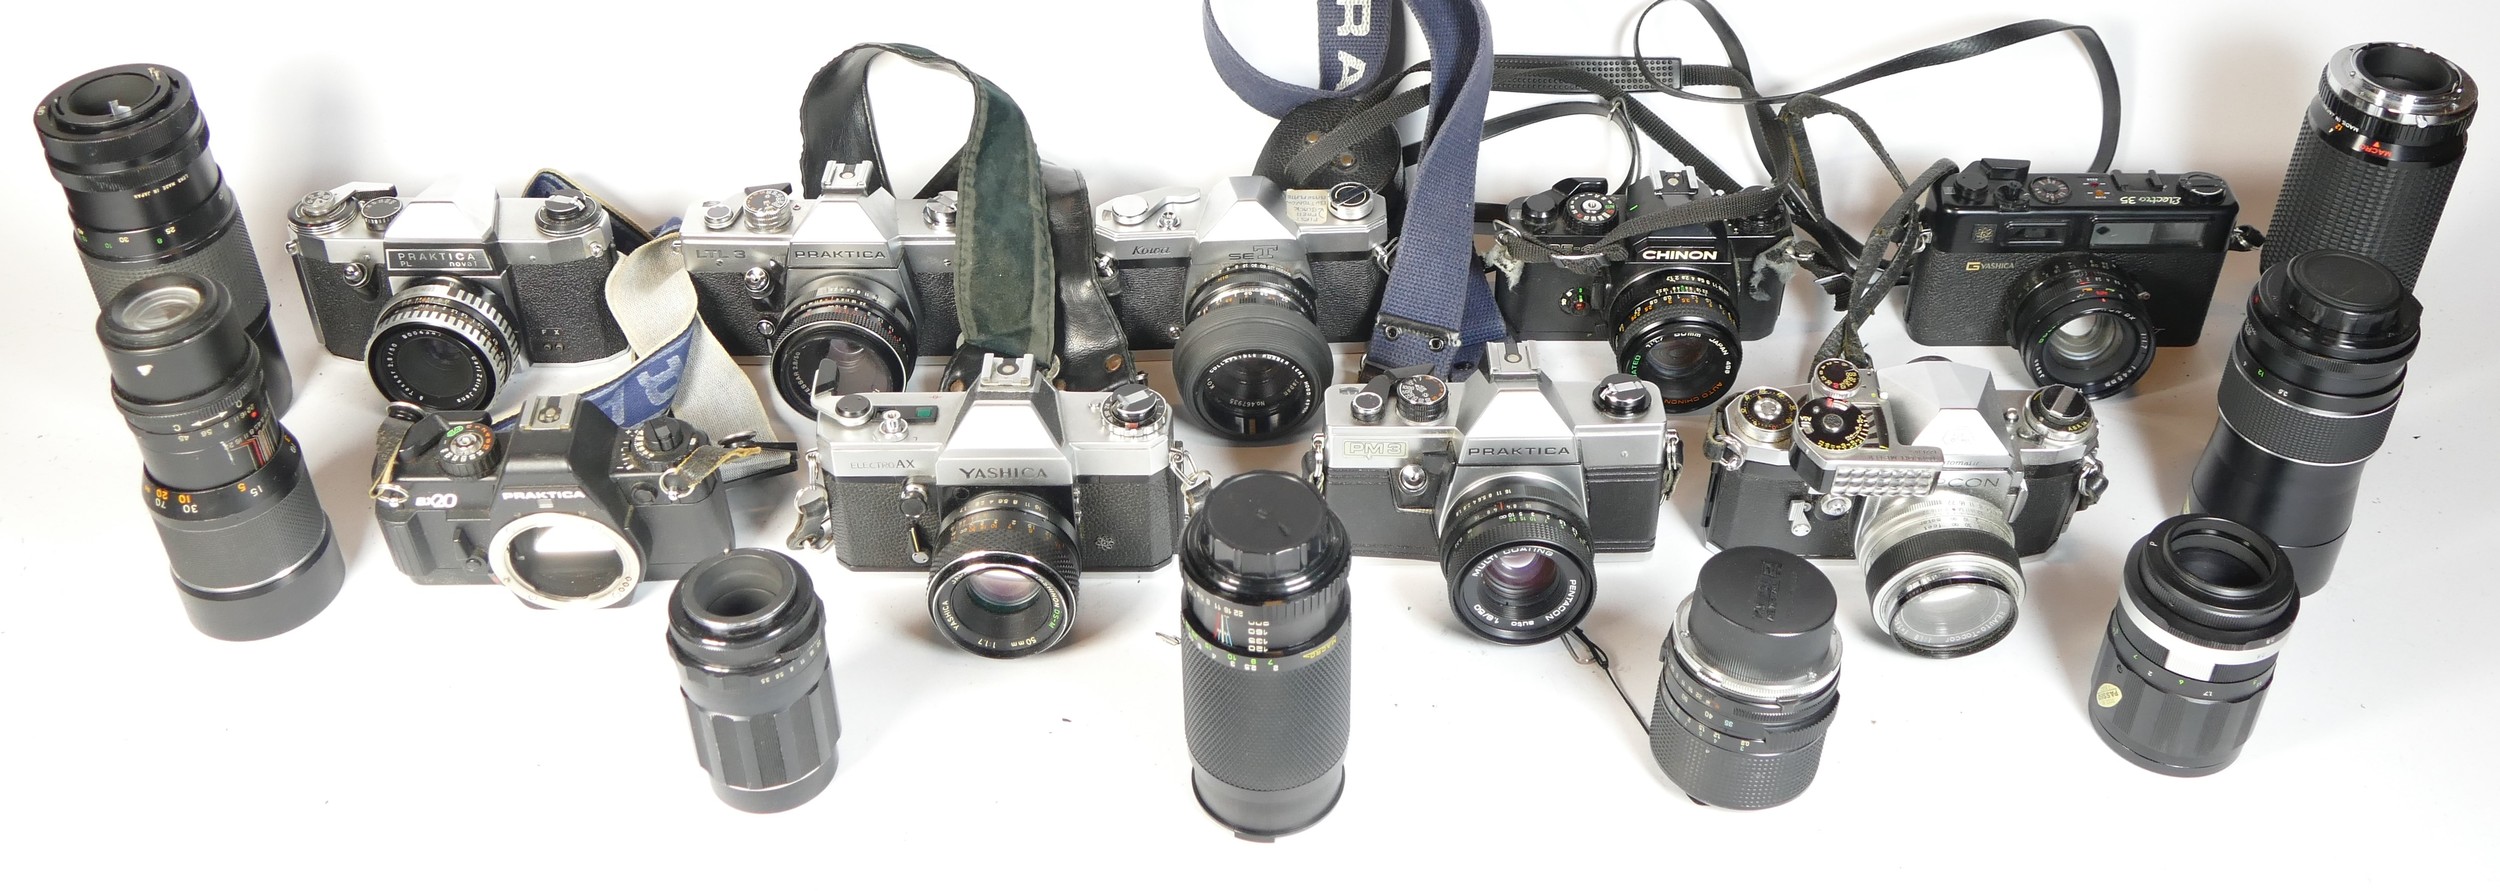 Nine SLR vintage film cameras to include a Yashica AX, a Praktica PM3, a Praktica LTL3 and a